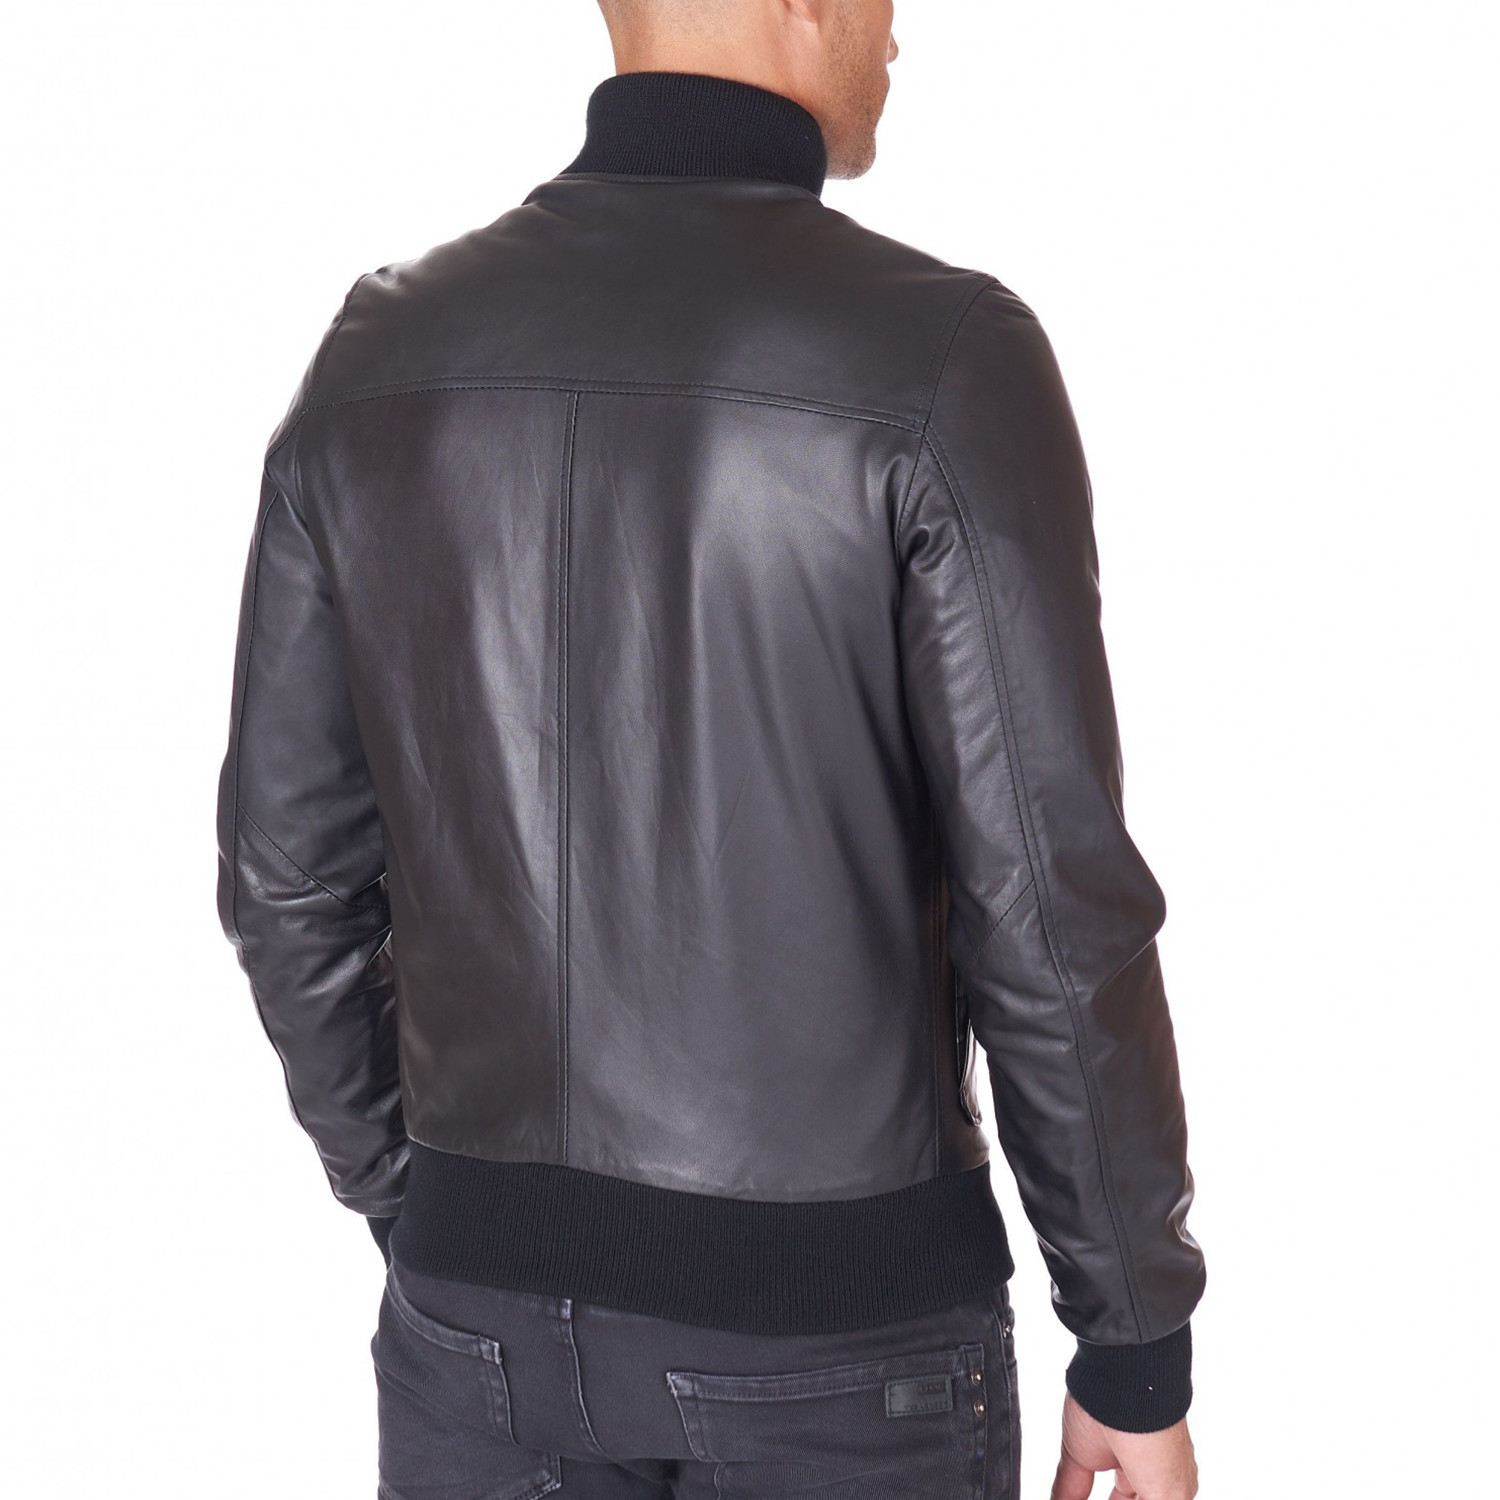 Alex Bottoni Bomber Jacket Leather Jacket // Black (Euro: 44) - AD ...